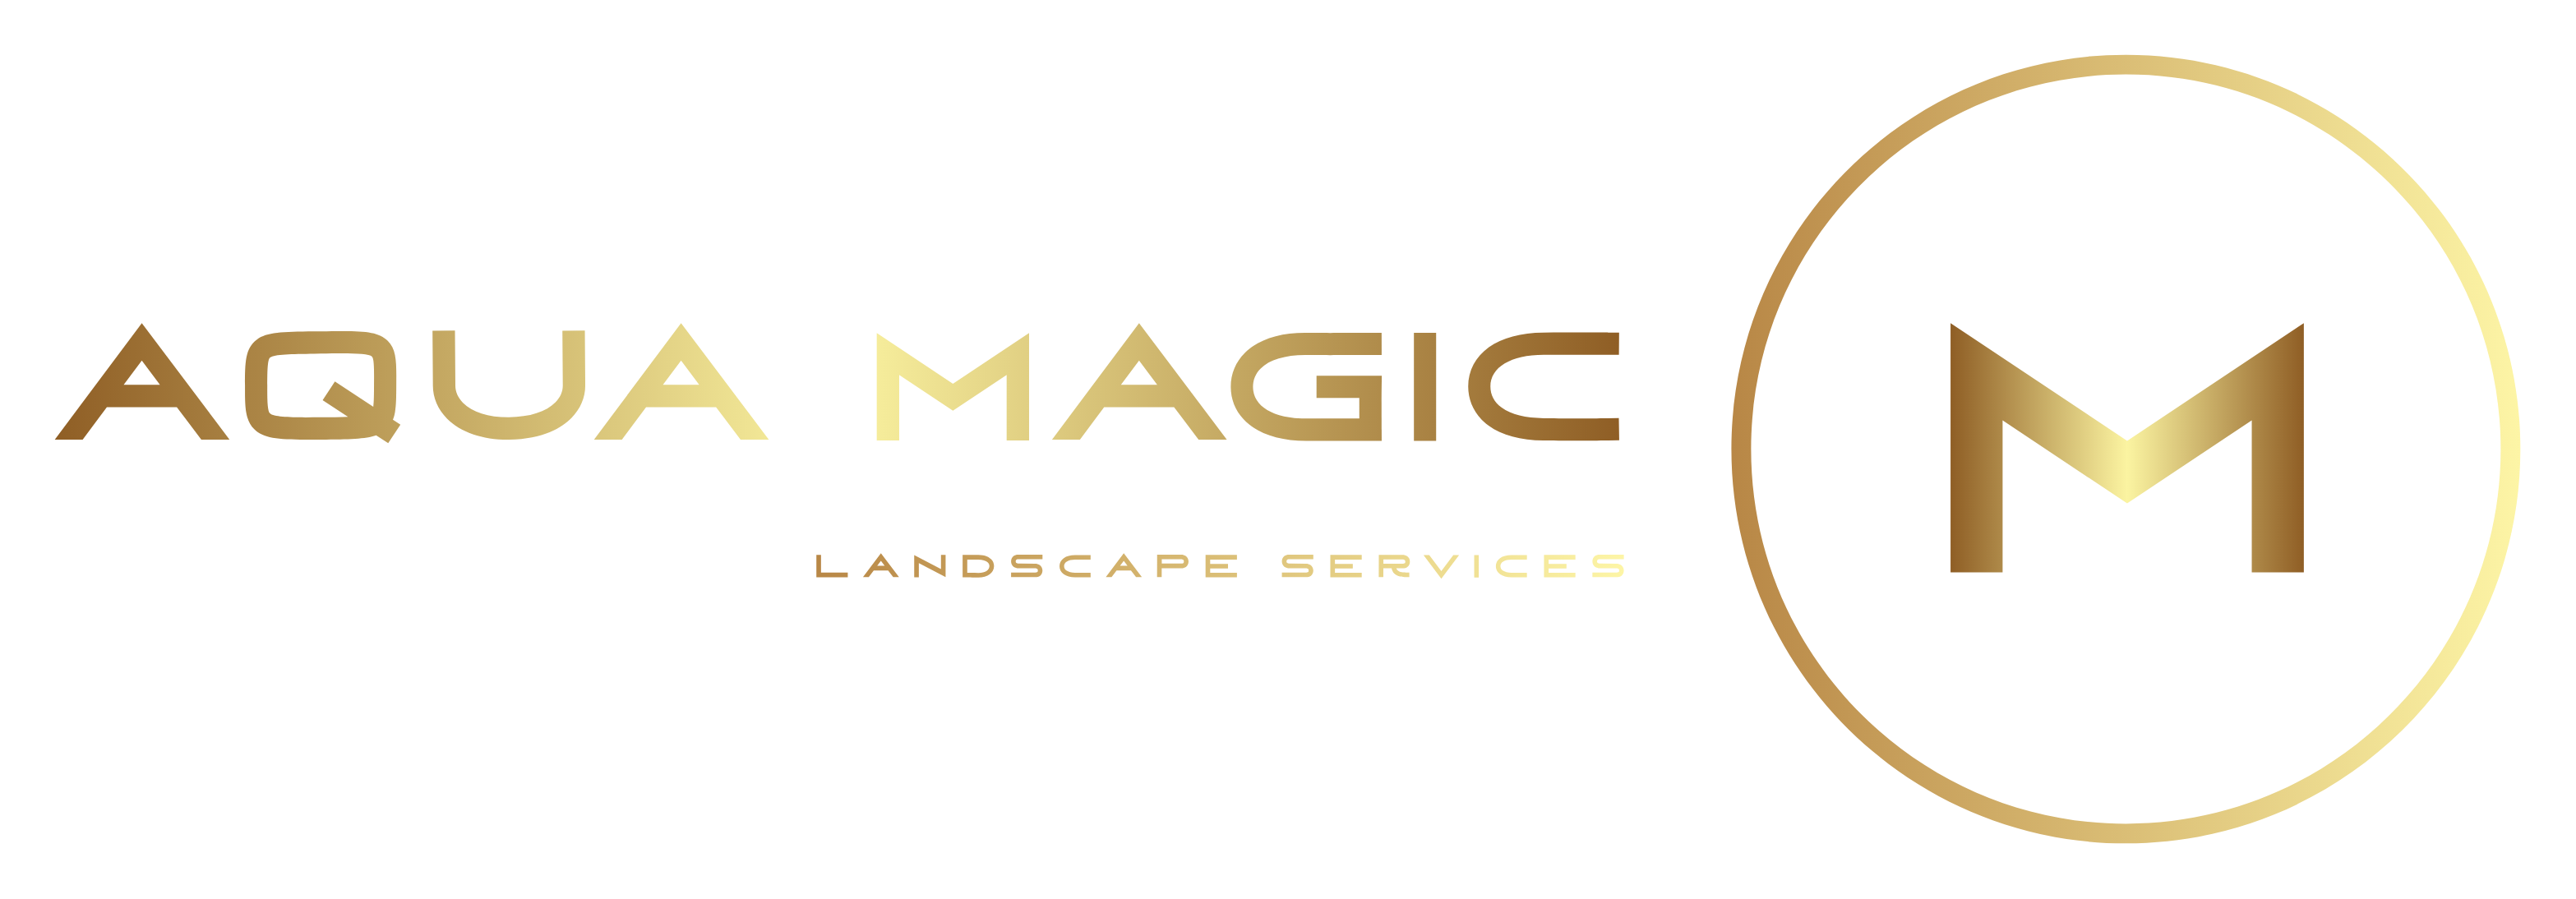 Magic Services